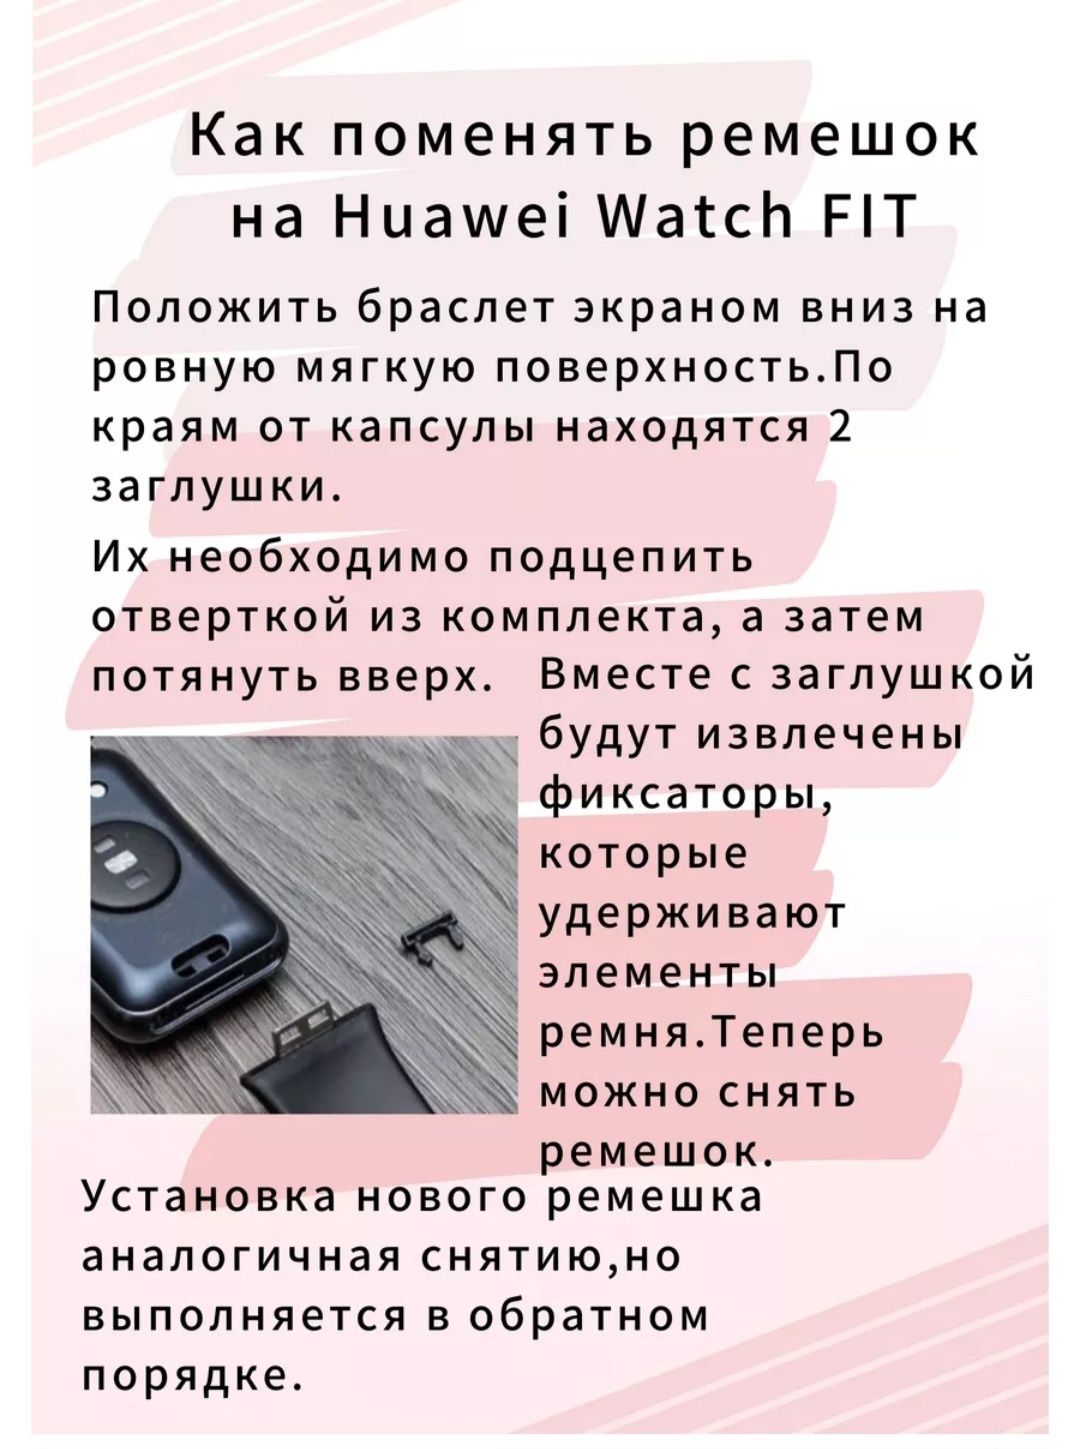 Ремешок для часов Huawei Watch Fit